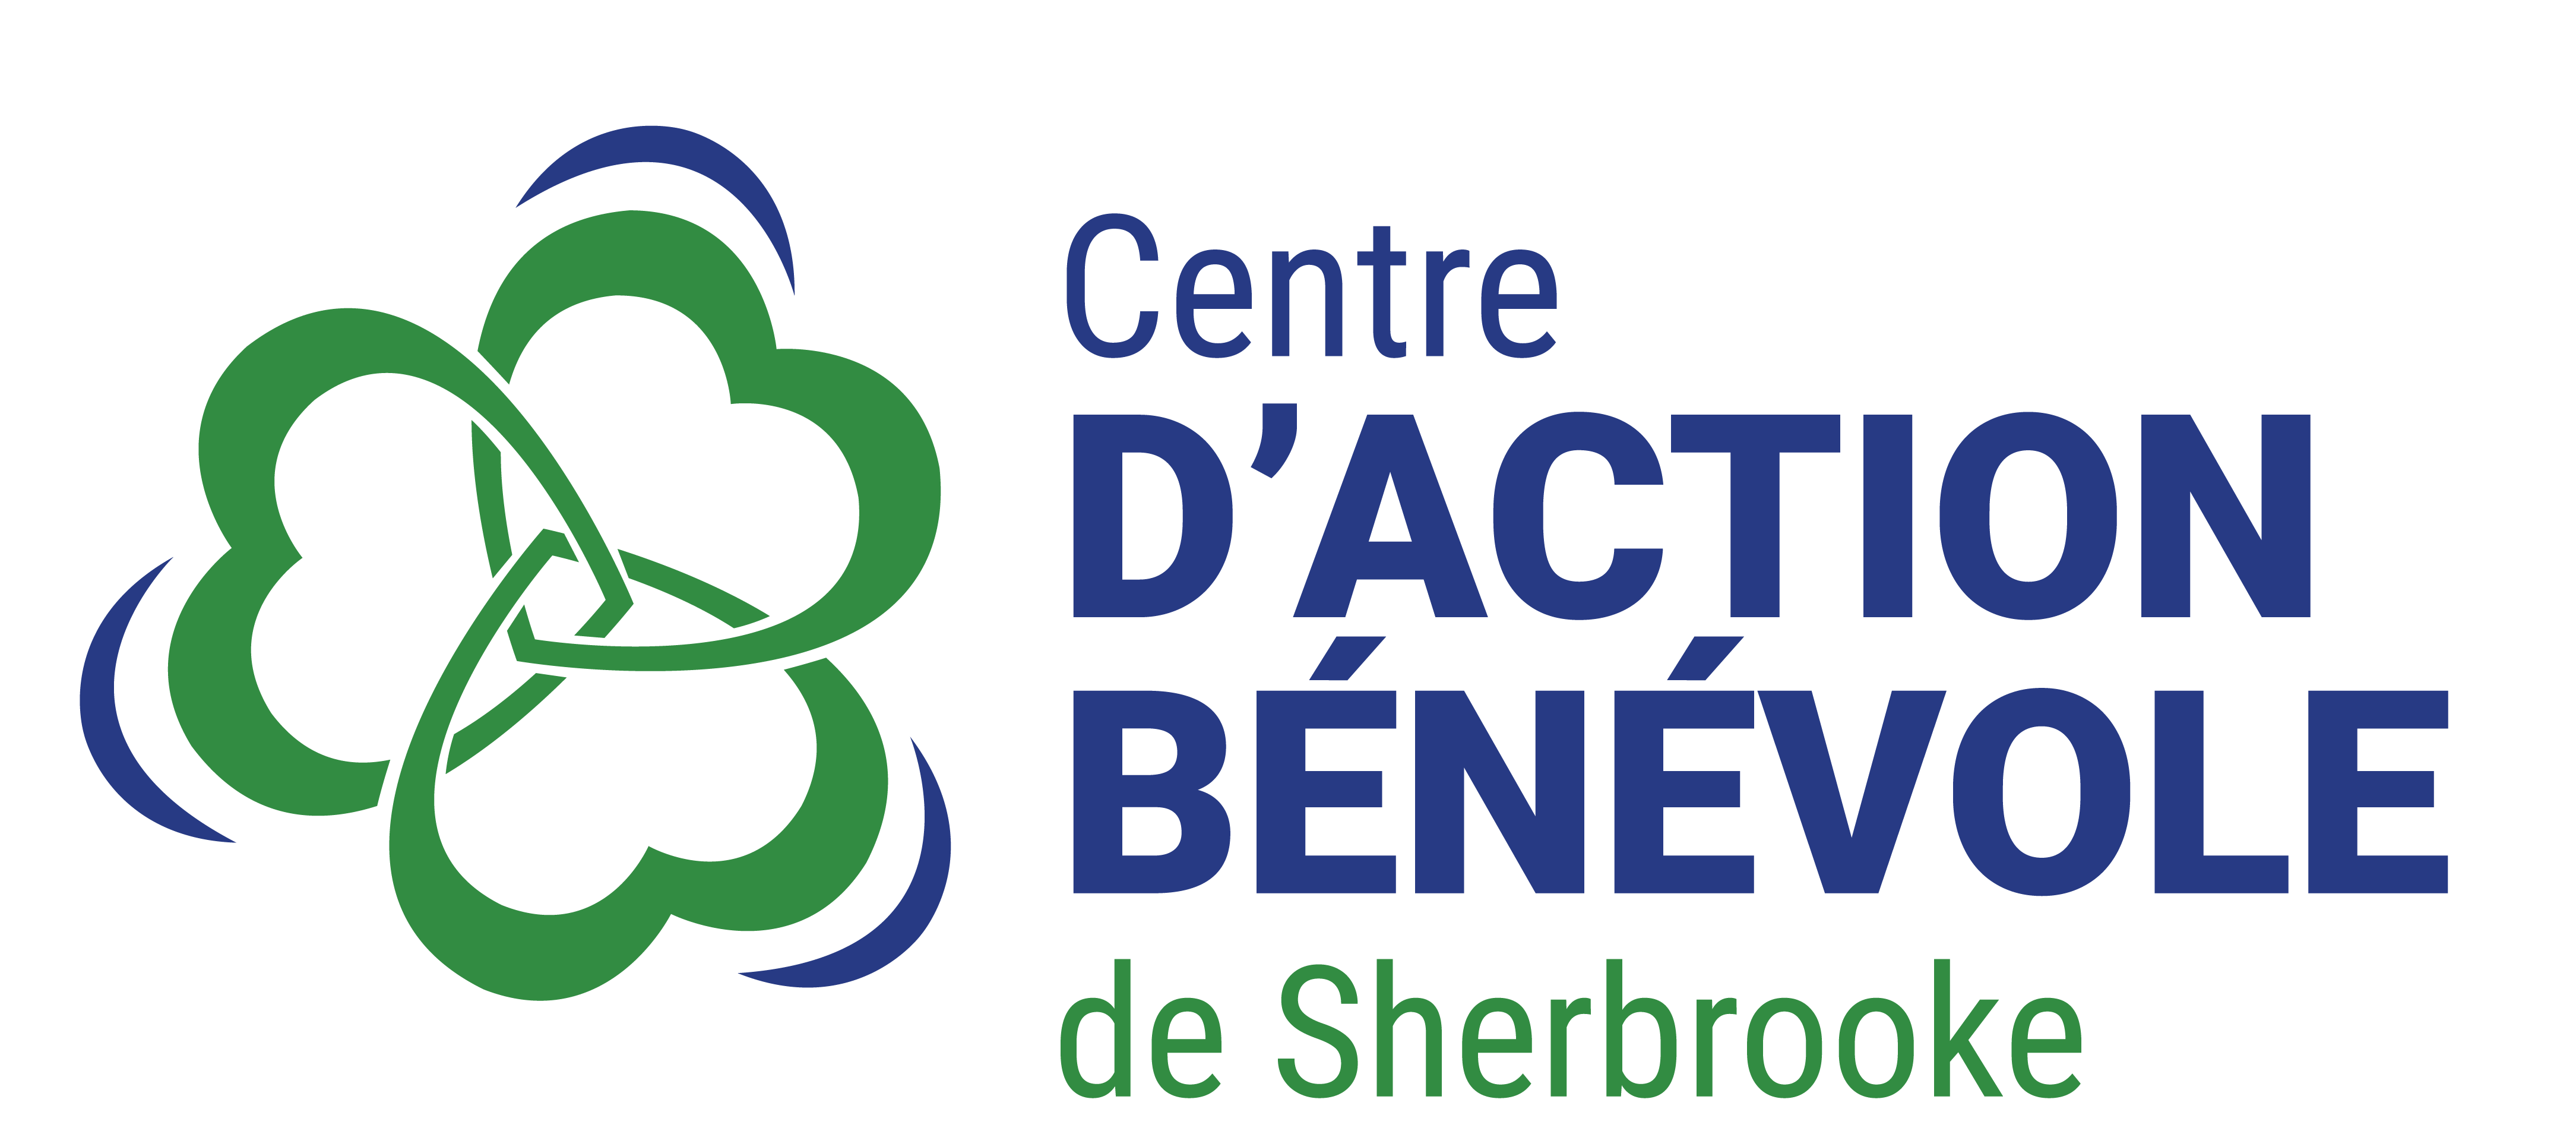 Centre d'action bénévole de Sherbrooke (CABS)